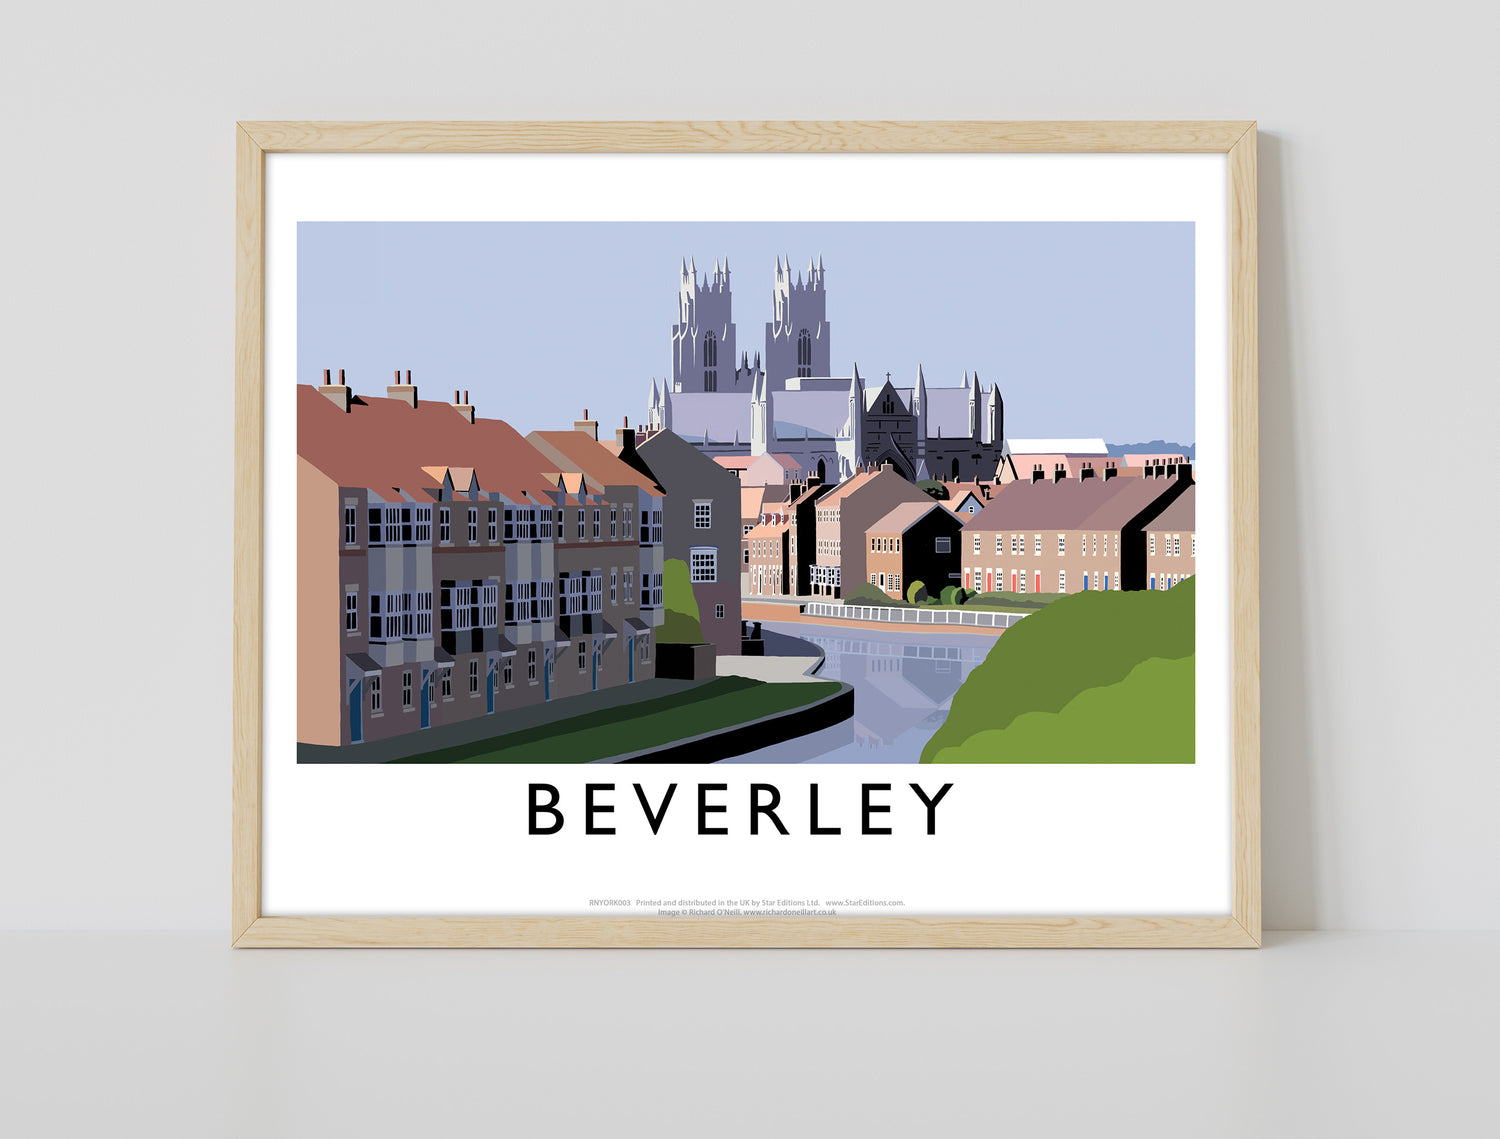 Beverley, Yorkshire - Art Print